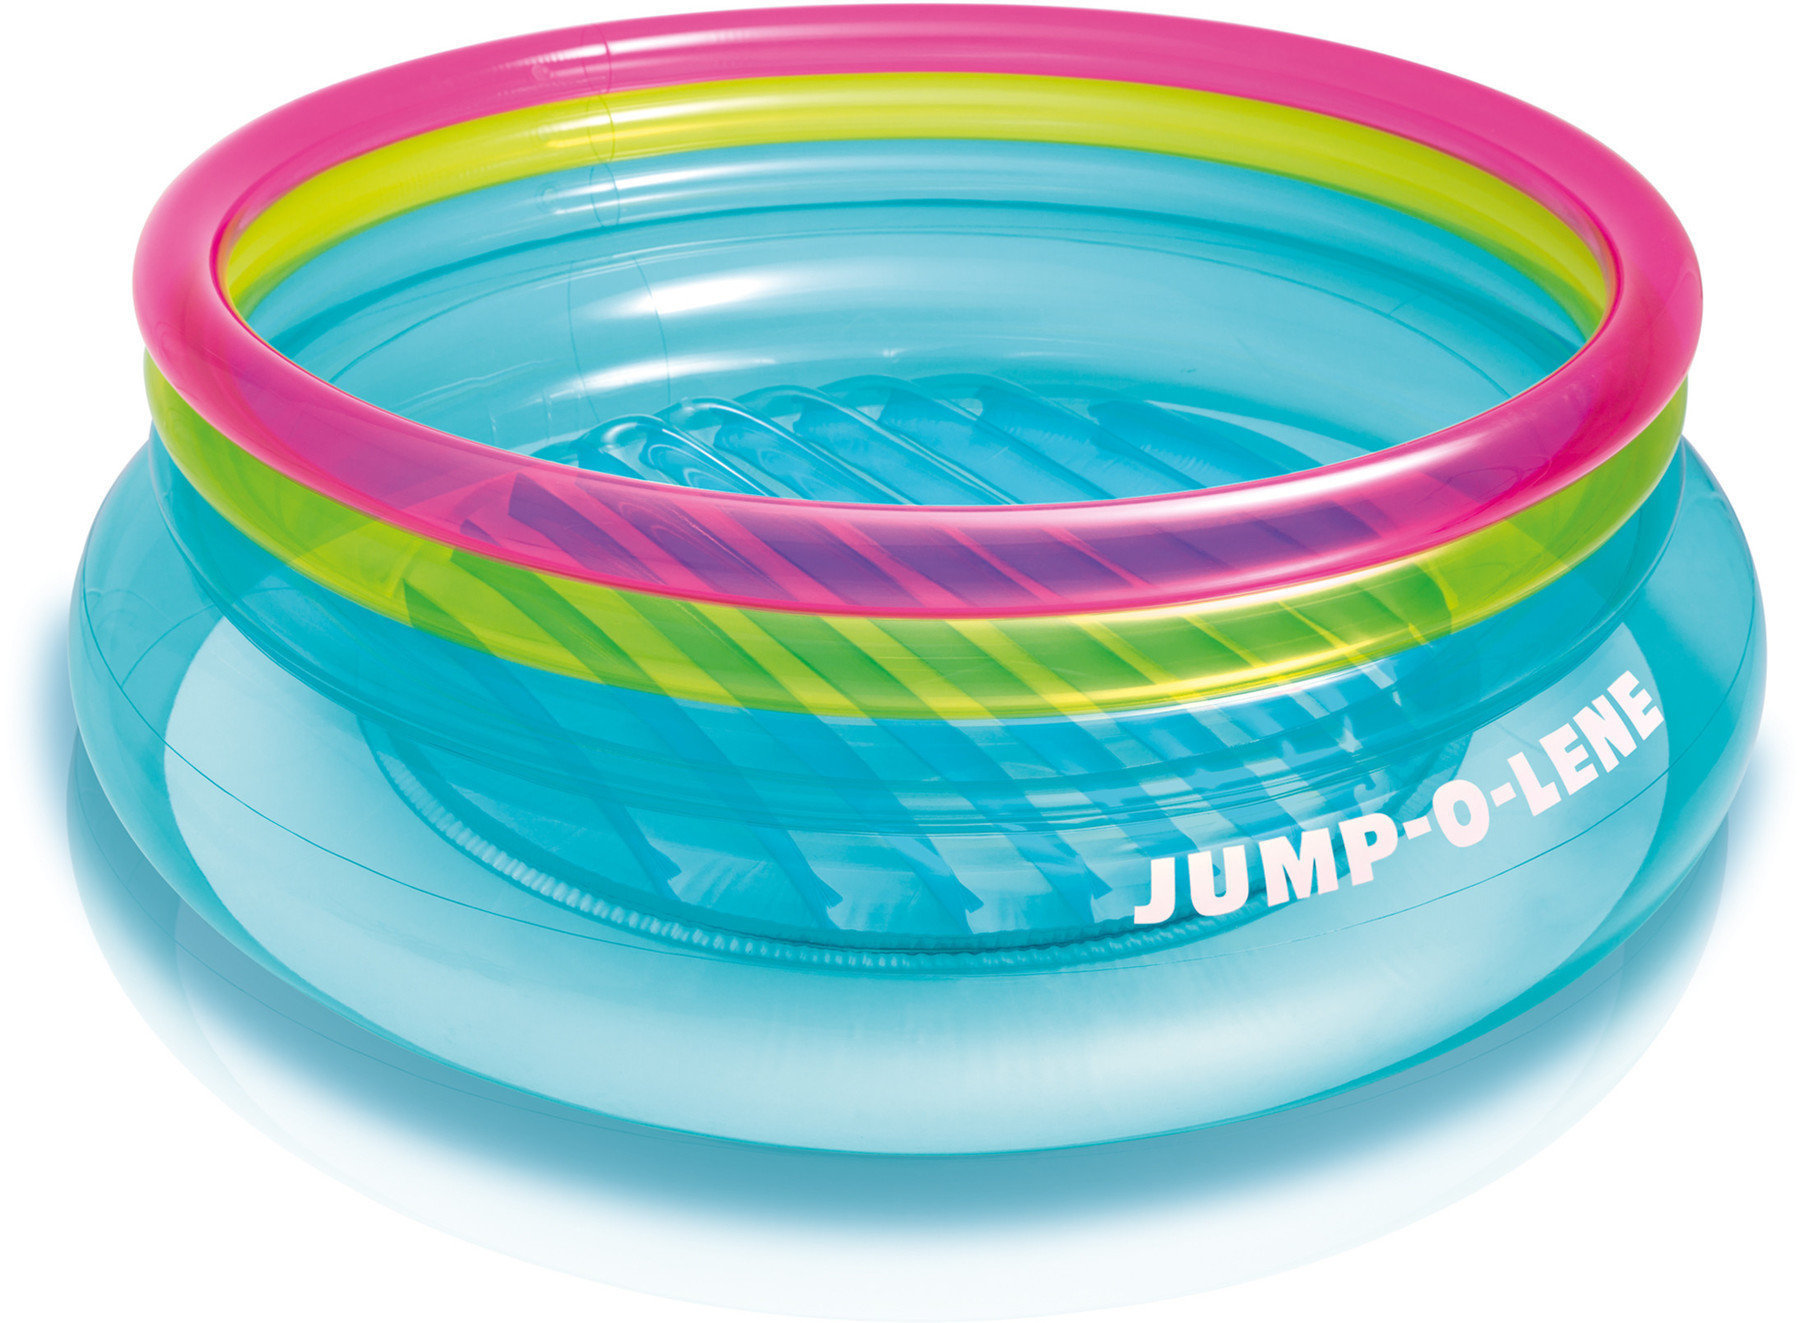 Trampolim, baloiço para crianças Intex Jump-O-Lene